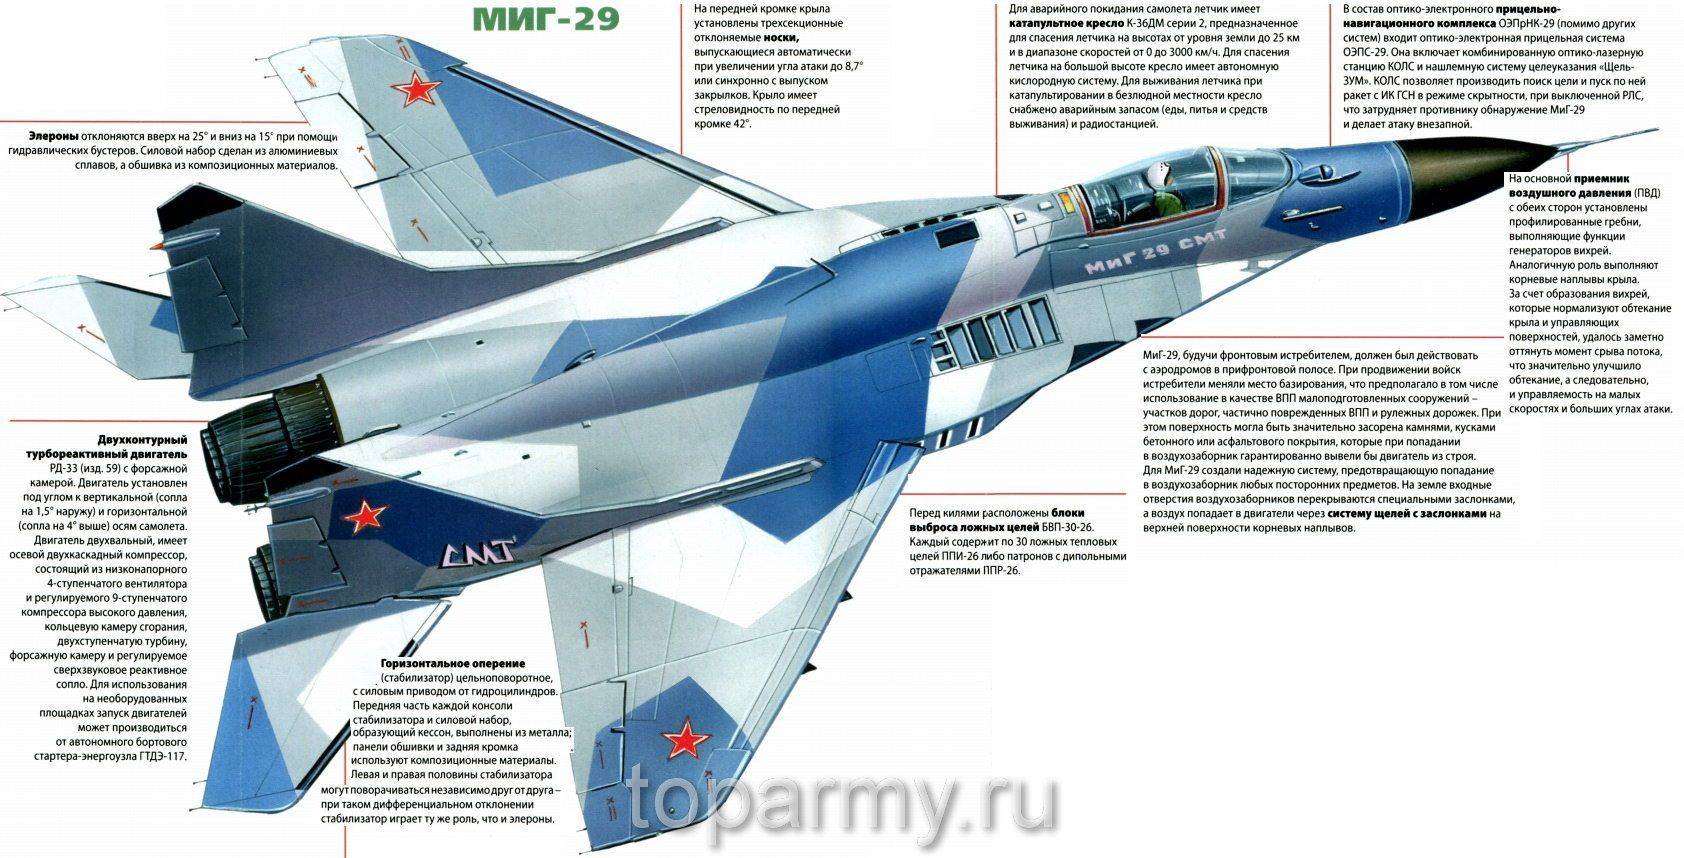 ✅ многоцелевой истребитель миг-21: история создания, описание и характеристики - sport-nutrition-rus.ru